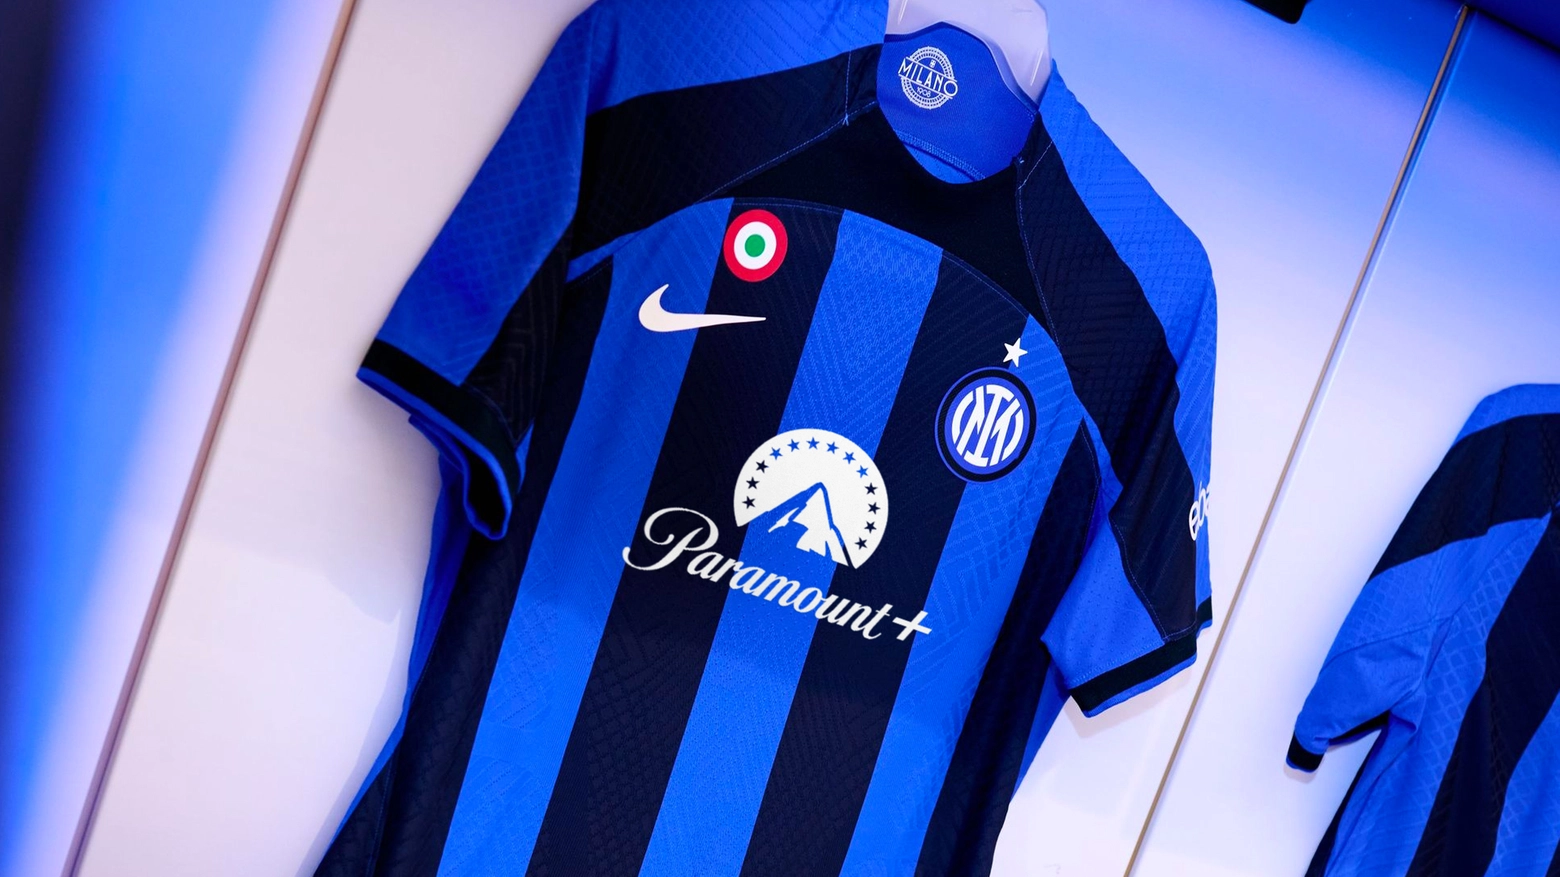 La maglia dell'Inter con il logo Paramount+